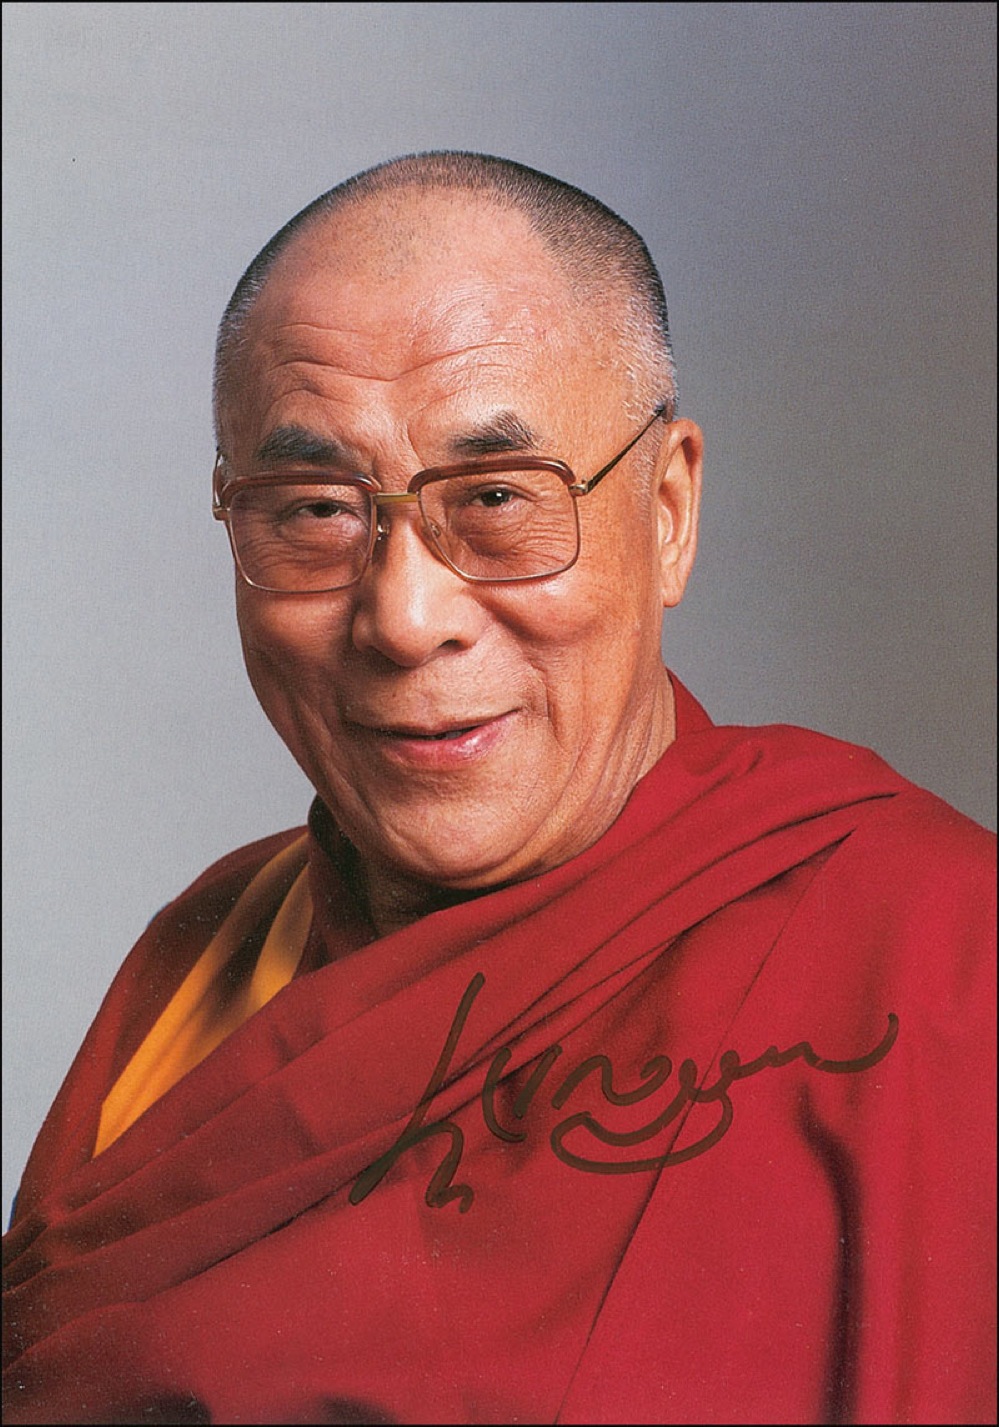 Lot #175 Dalai Lama